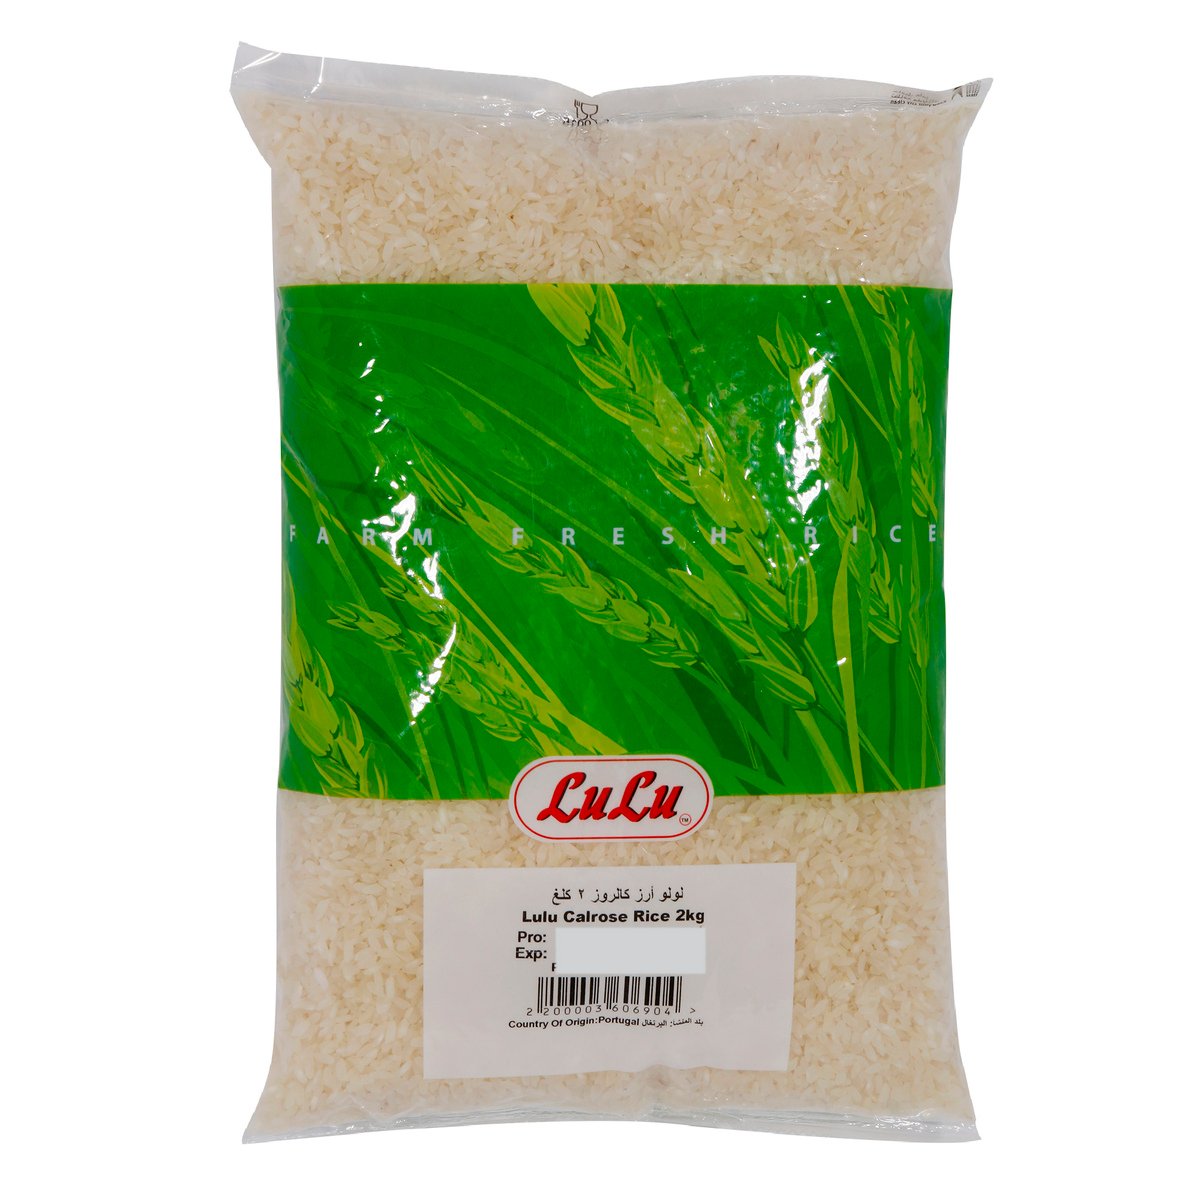 LuLu Calrose Rice 2kg